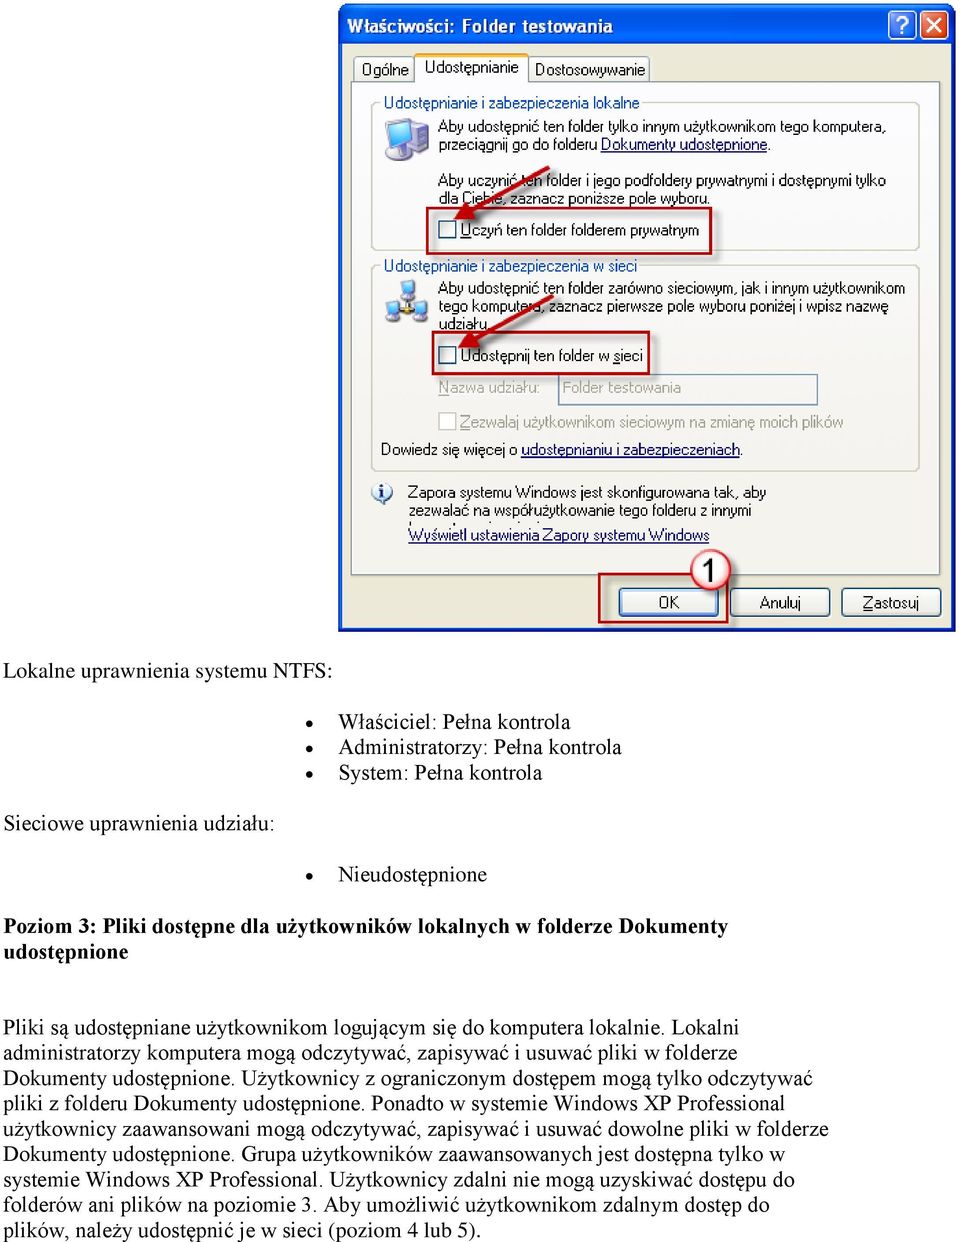 Lokalni administratorzy komputera mogą odczytywać, zapisywać i usuwać pliki w folderze Dokumenty udostępnione.